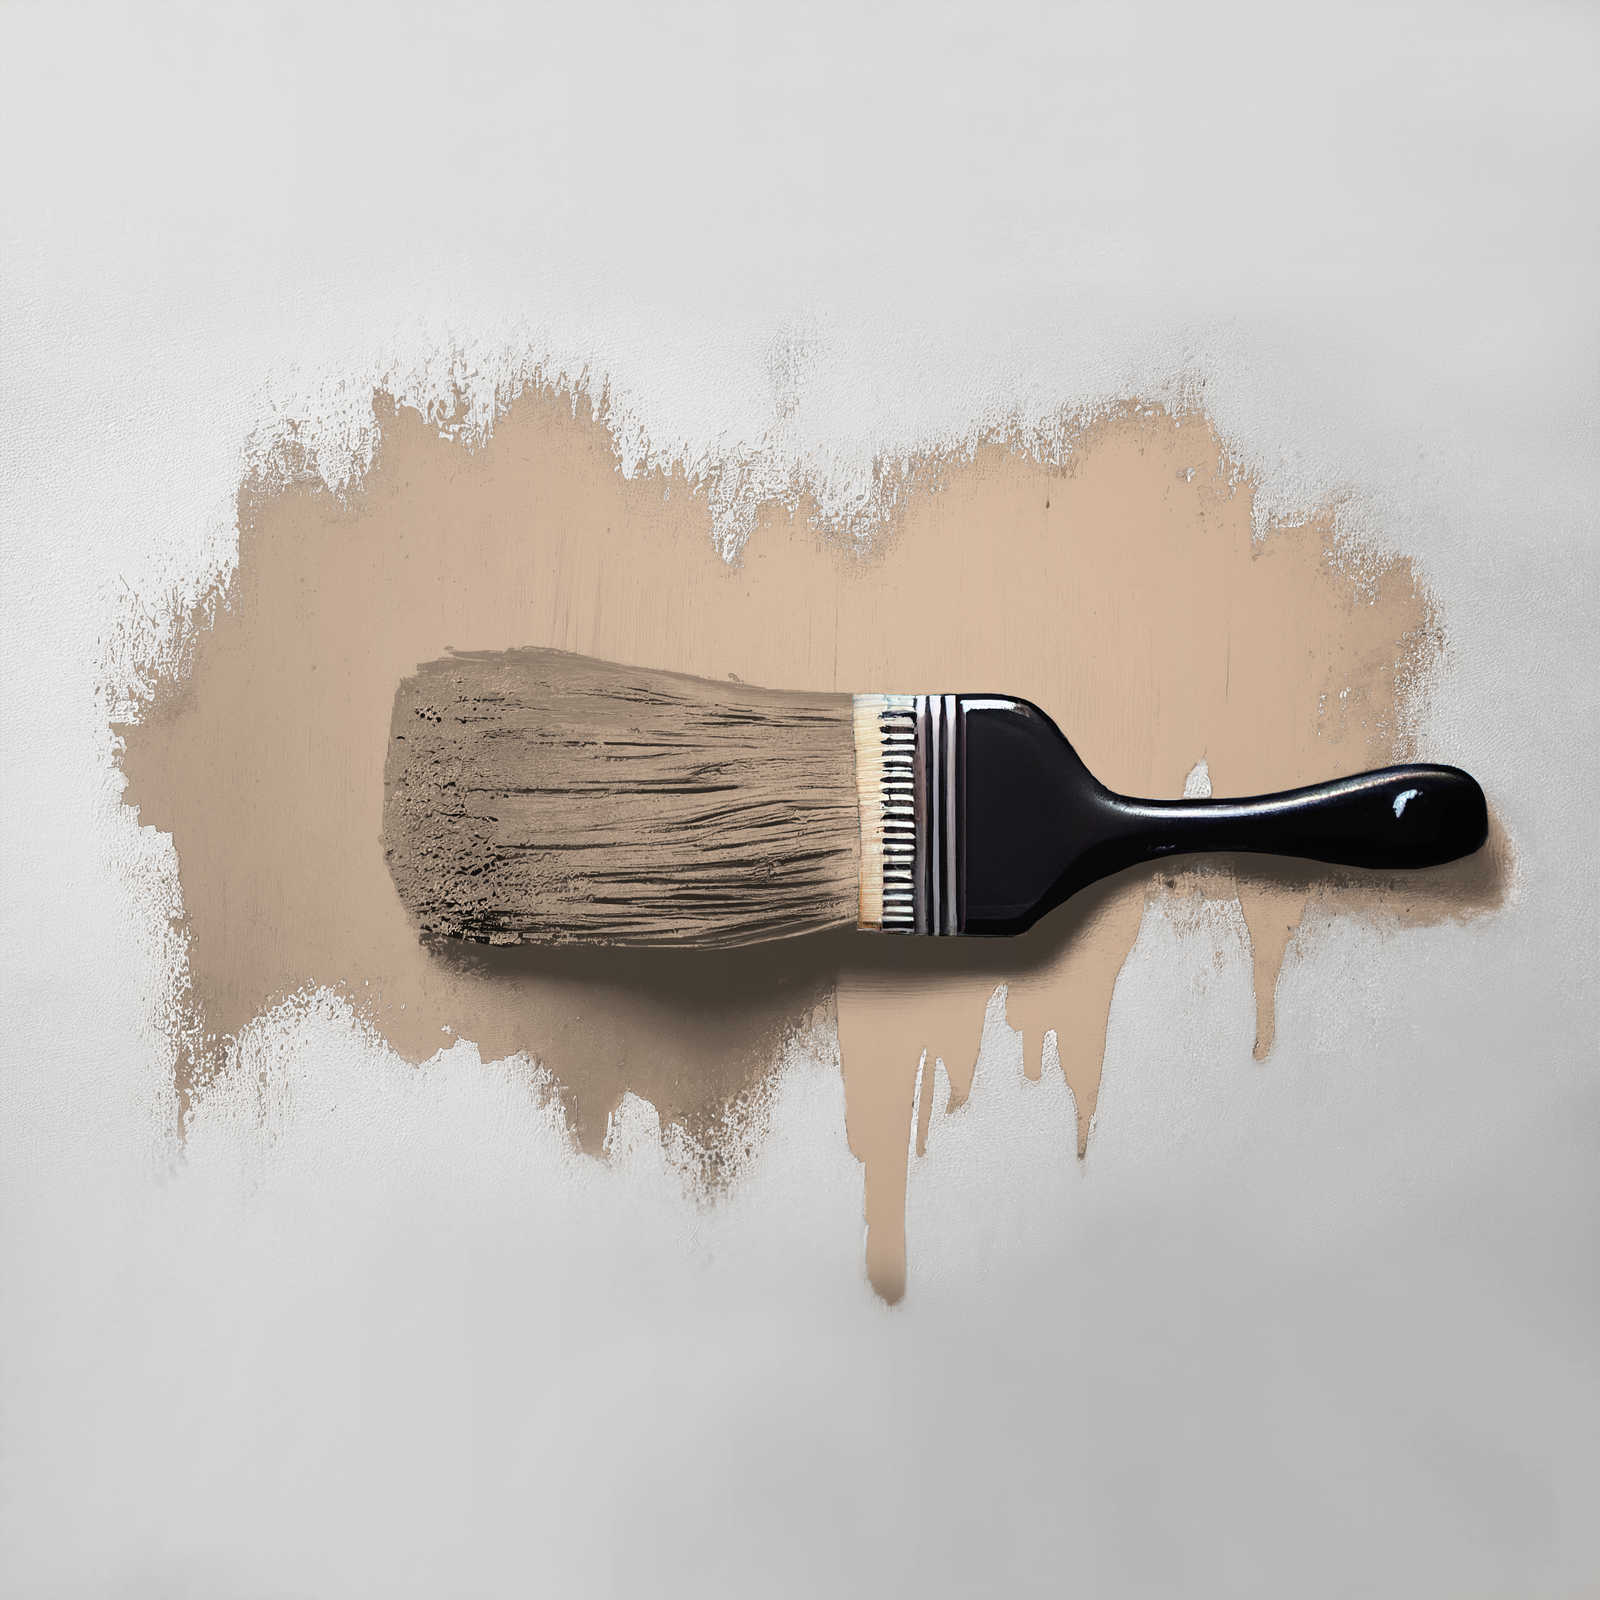             Pittura murale TCK6010 »Latte Macchhiato« in beige naturale – 2,5 litri
        